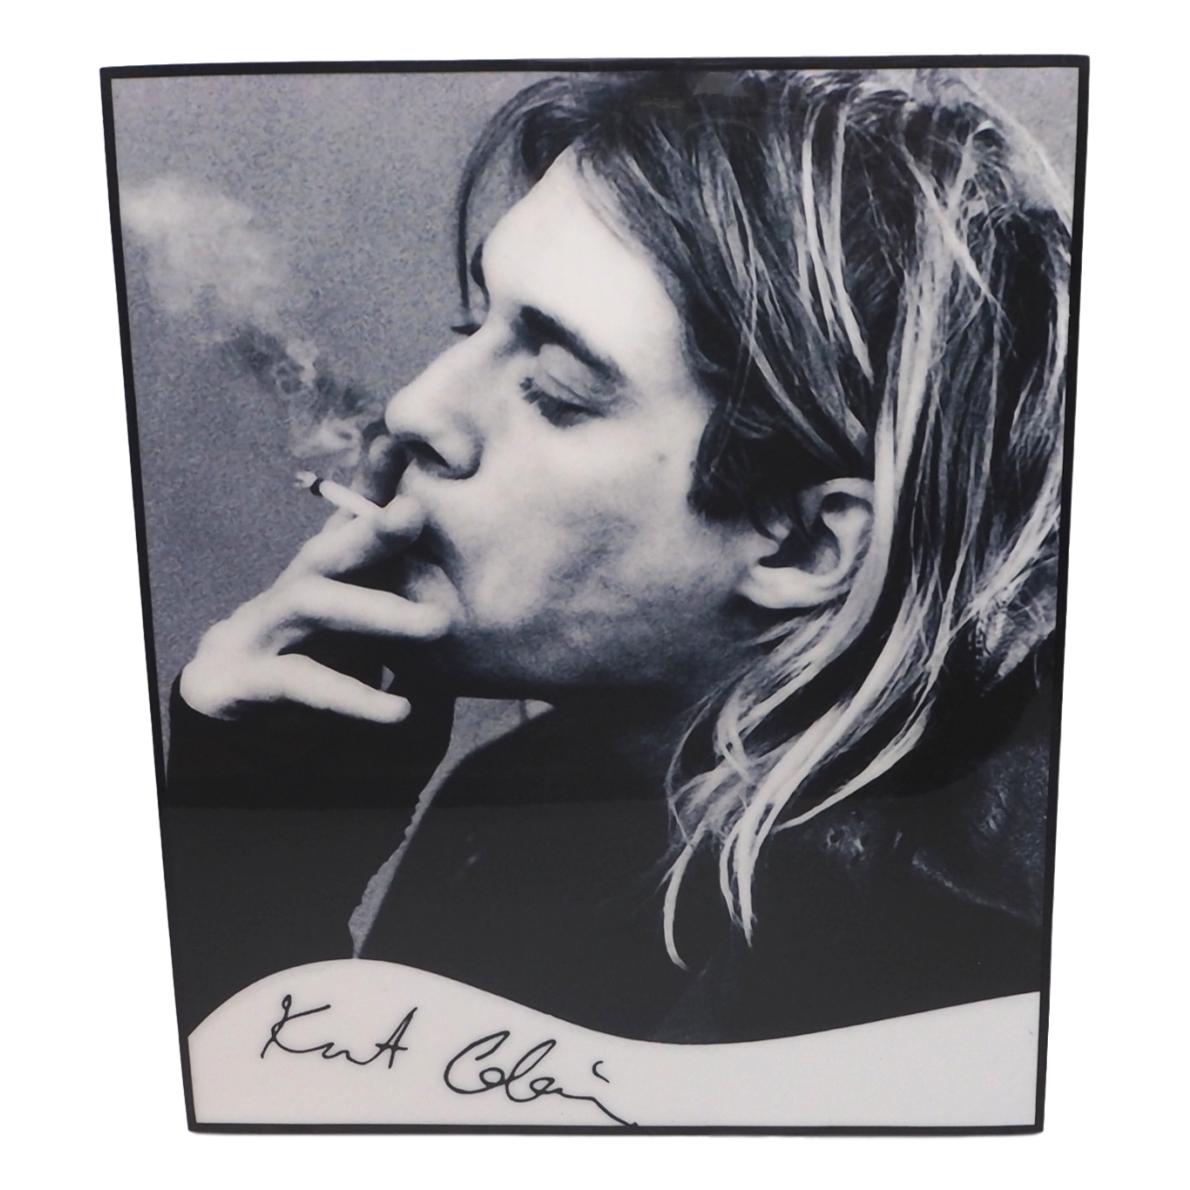 楽天市場 送料無料 カート コバーン Kurt Cobain ニルヴァーナ Nirvana アートパネル 壁掛け 据え置き 壁掛けフック付き アーティスト Popパネル インテリア アートフレーム ポスター Cool クール かっこいい アート 雑貨 カフェ リビング 額付き 額入り 額縁